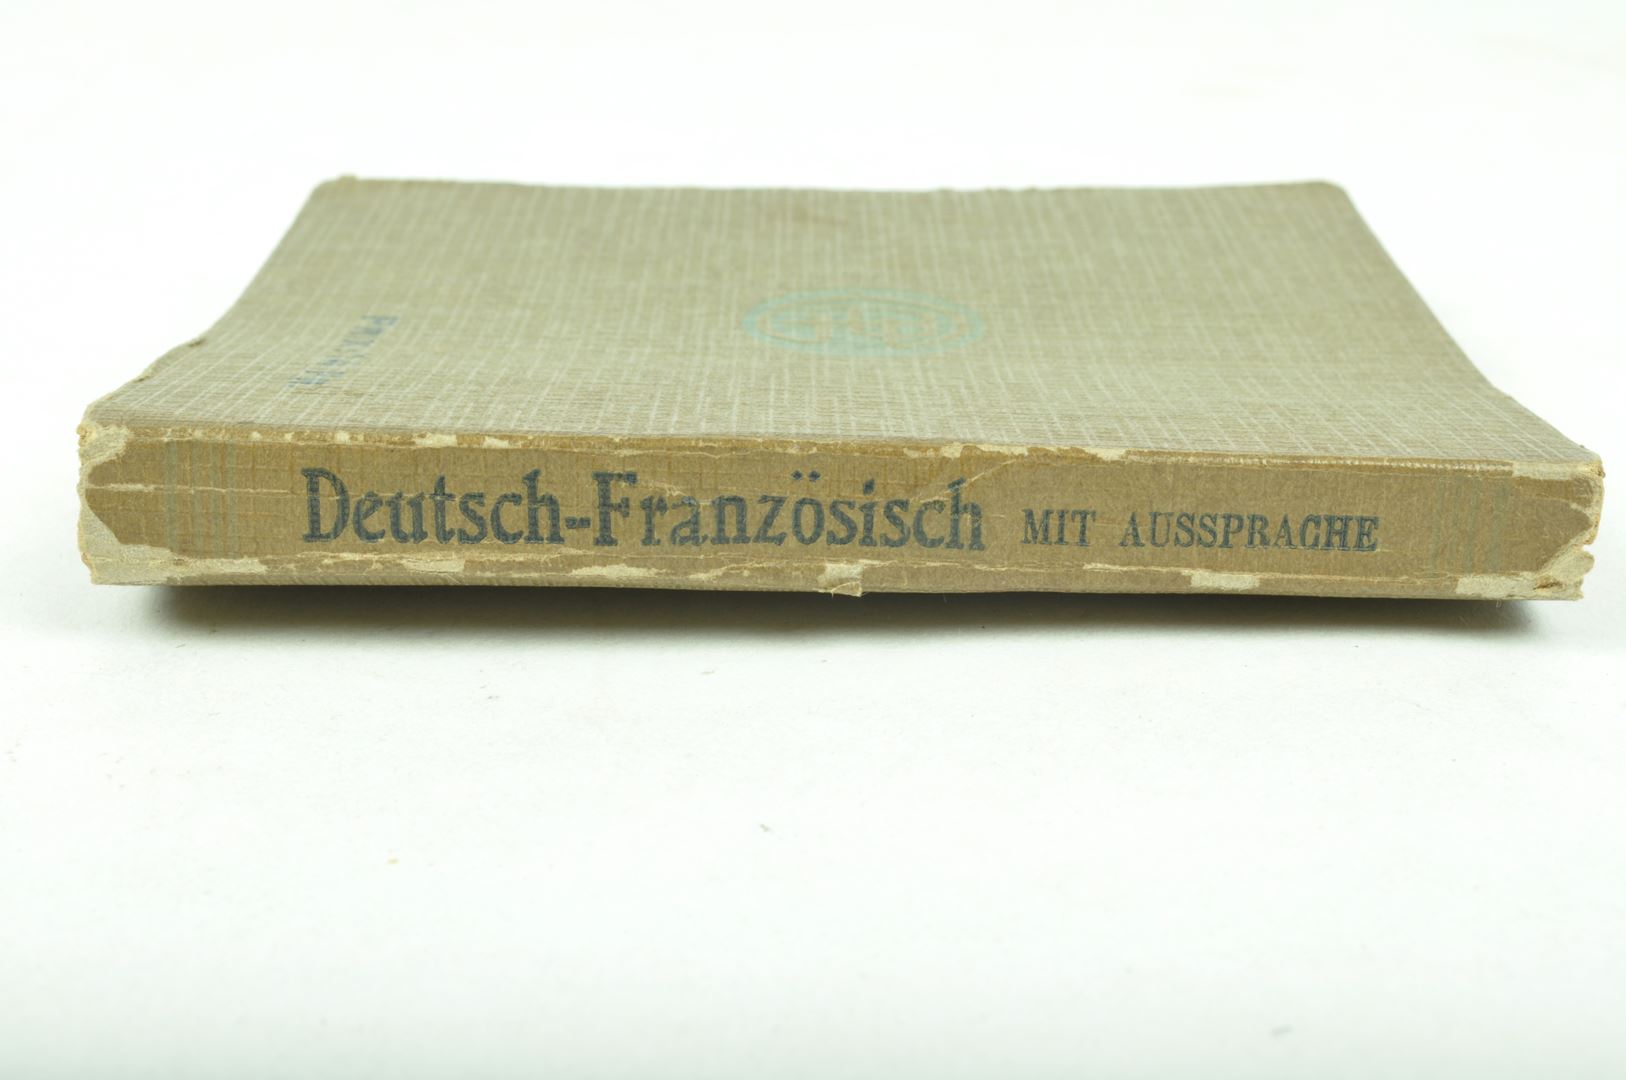 Dictionnaire Wehrmacht / traduction Allemand - Français édité à Paris